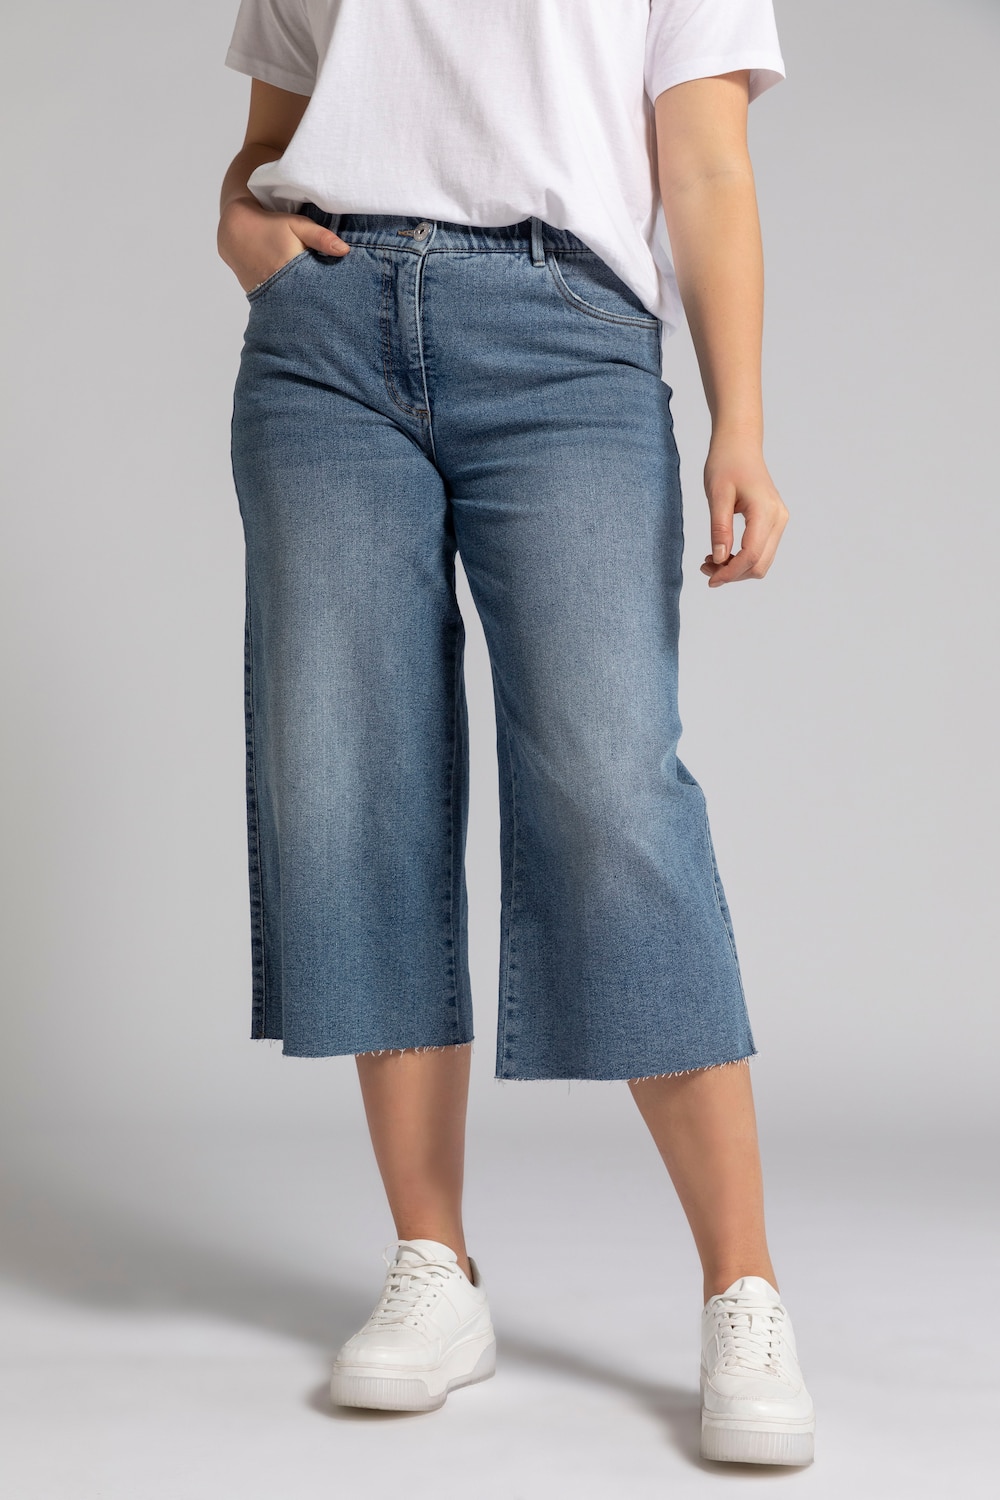 Grote Maten jeans culotte, Dames, blauw, Maat: 42, Katoen, Studio Untold